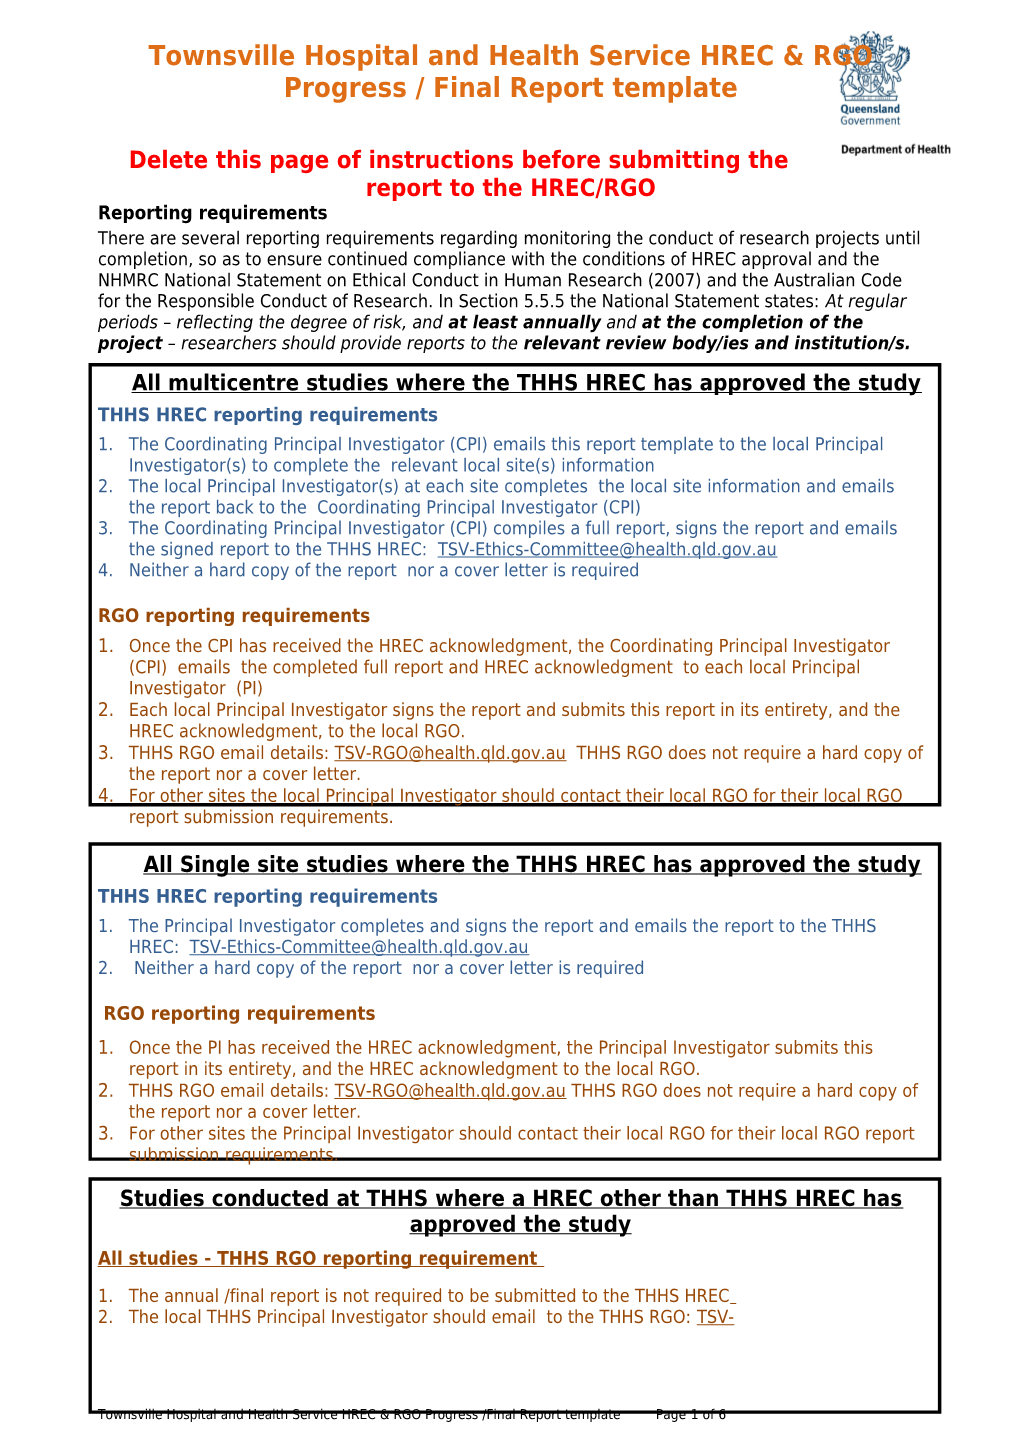 Hrec-Rgo-Progress-Final-Report- TRESA Clinical Governance Townsville HHS